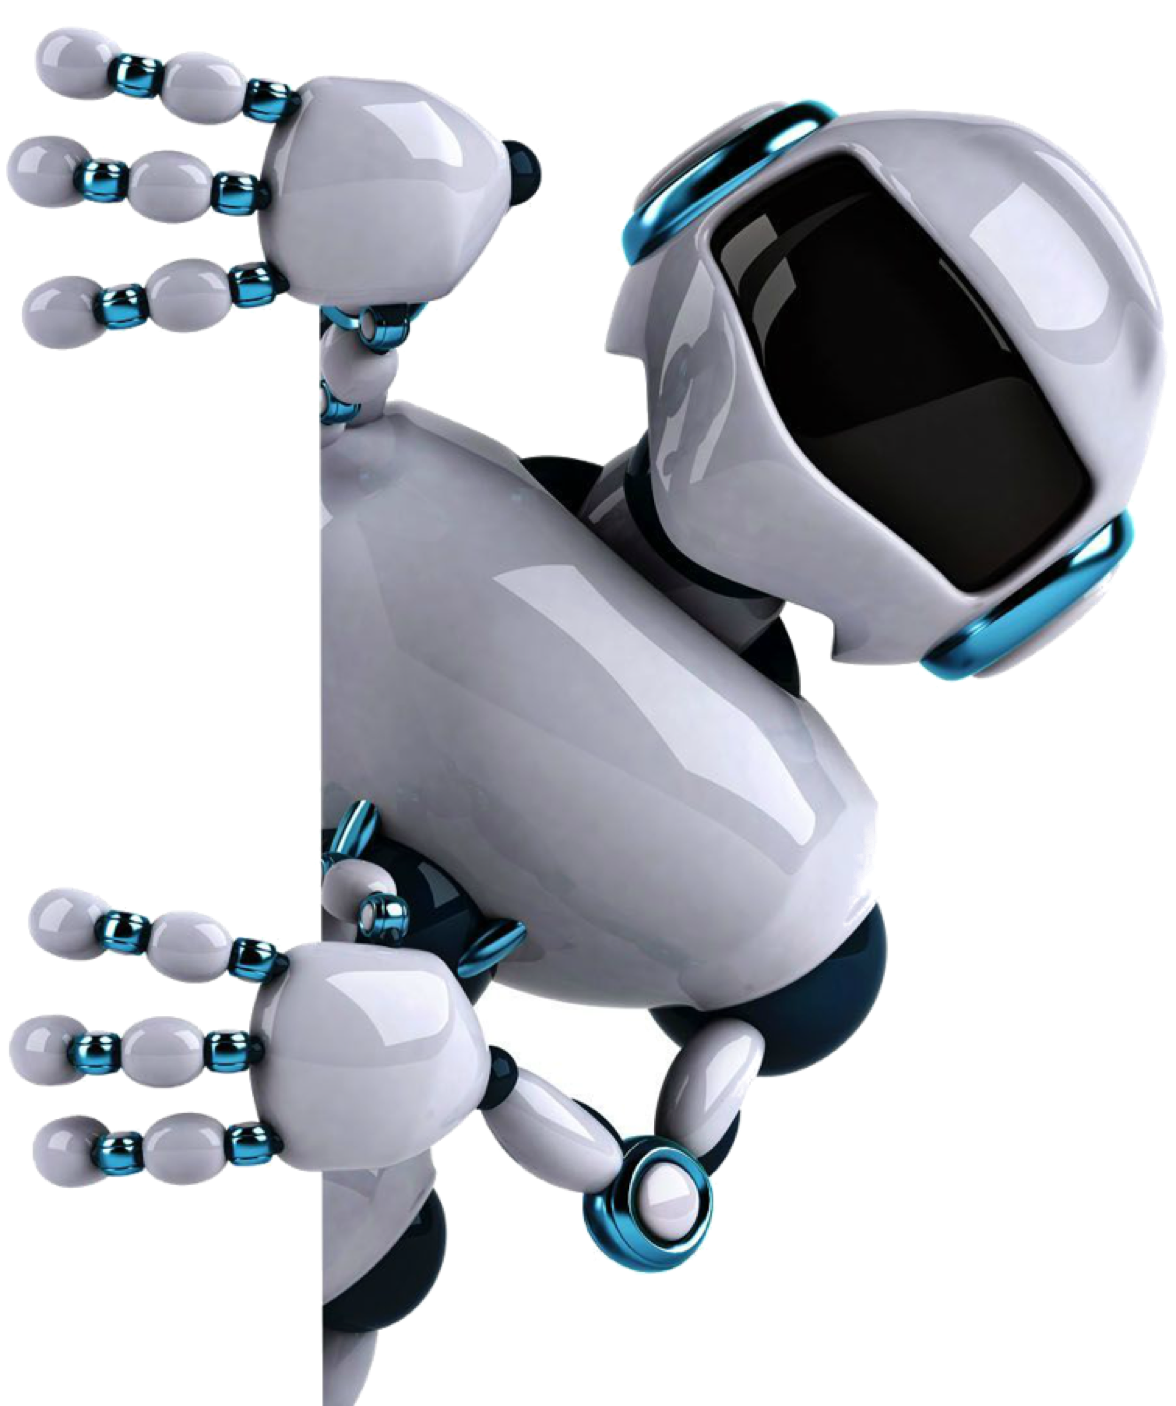 Бесплатные аи боты. Робот. Современные роботы. Робот на белом фоне. Роботы и робототехника.